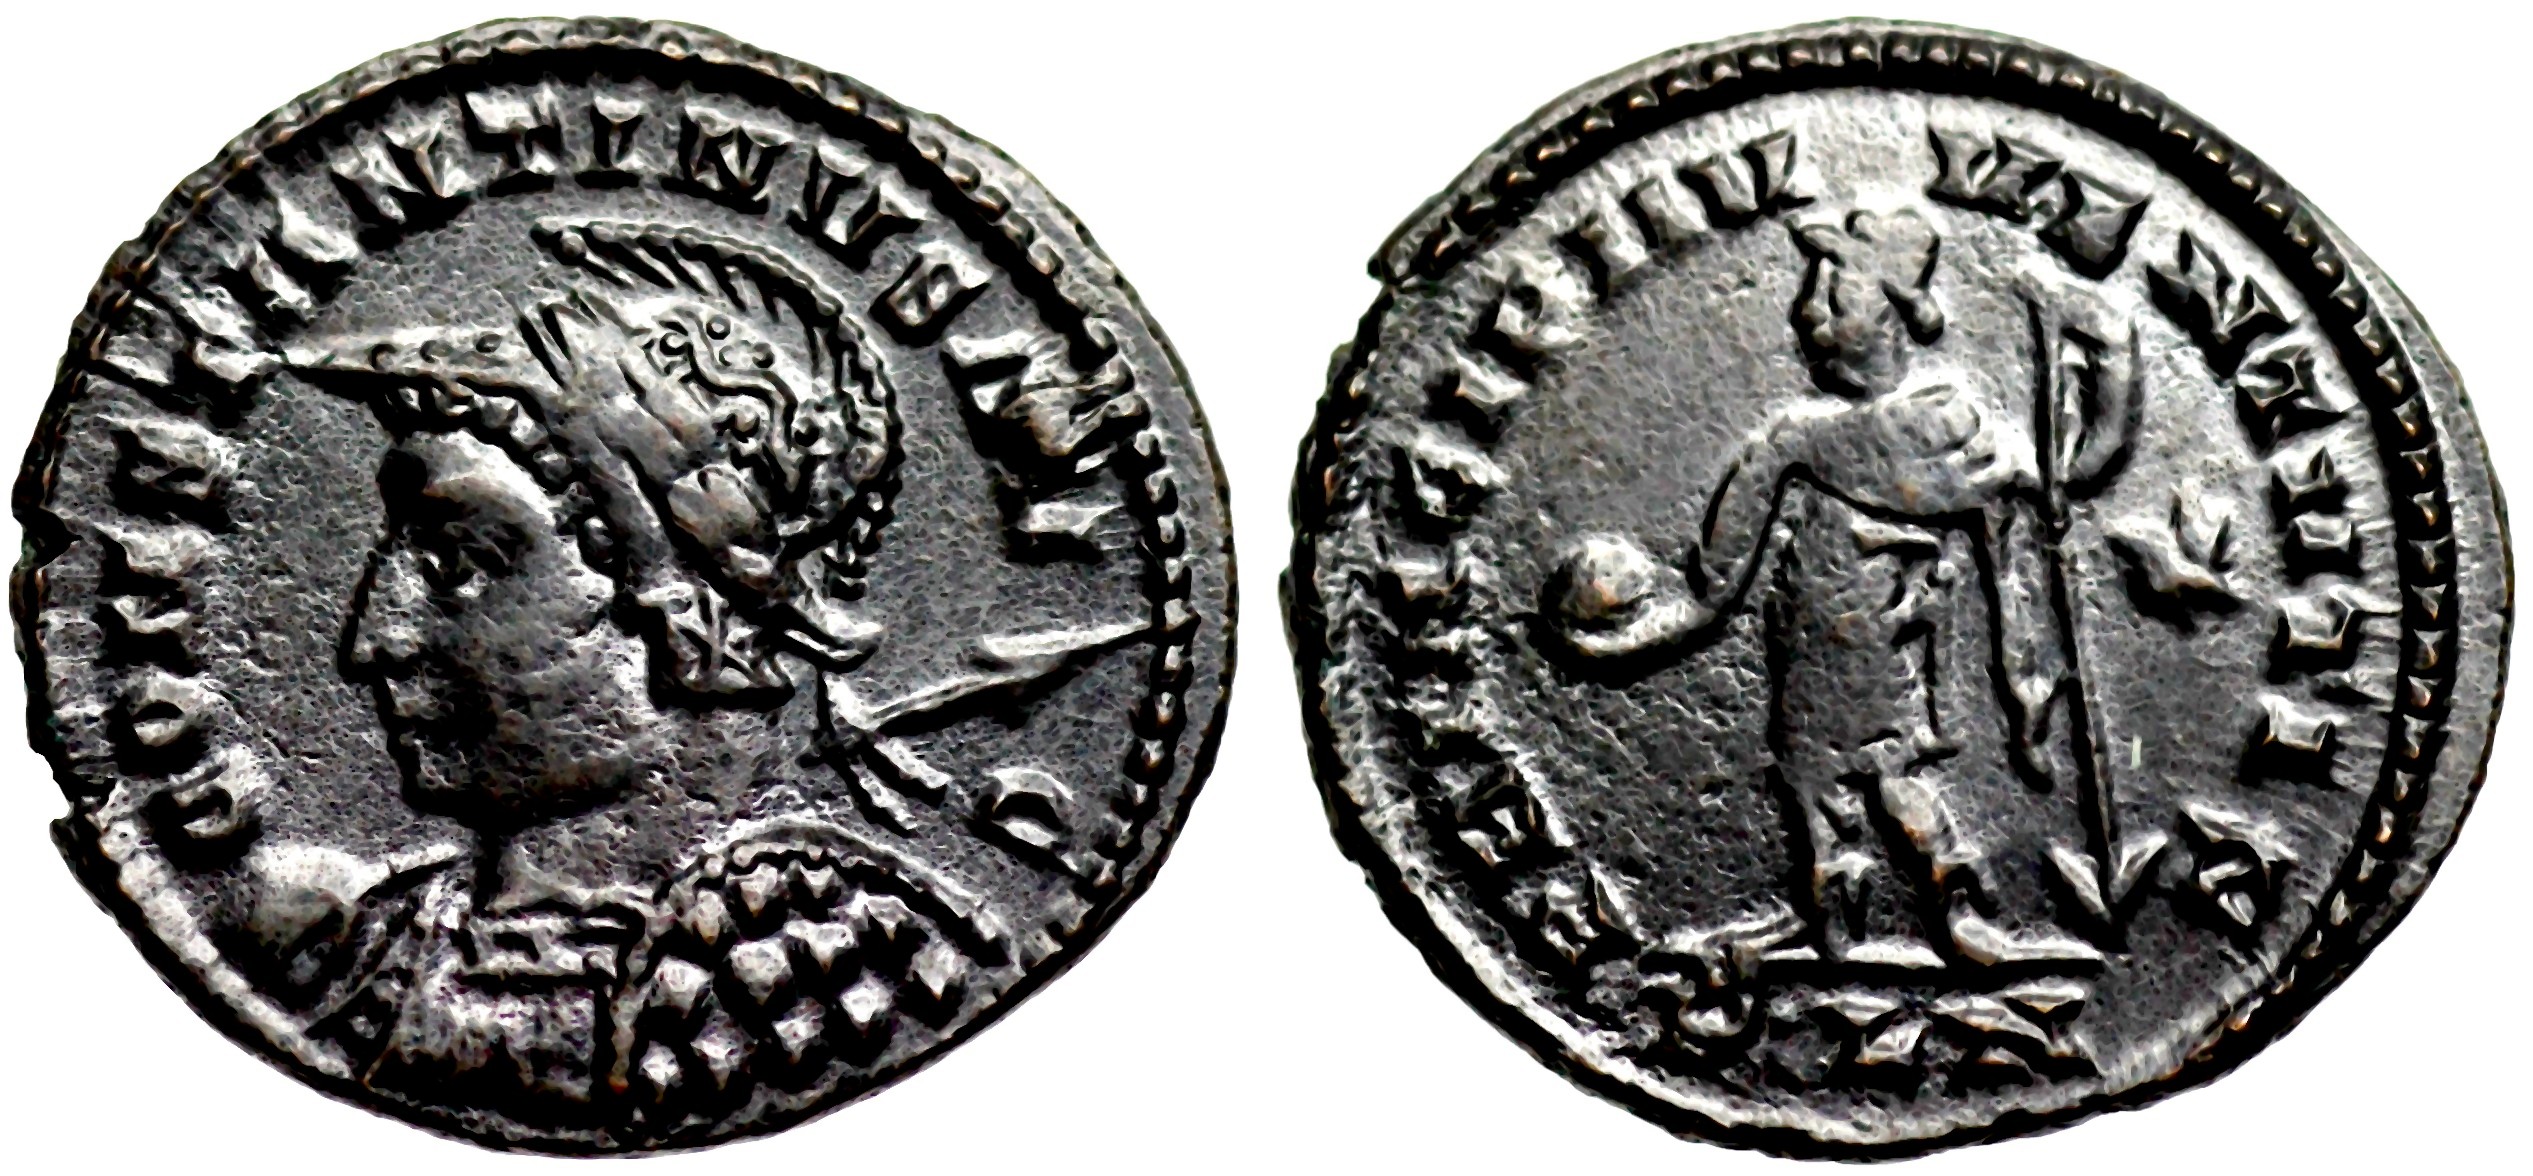 Глория экзертитус на монетах Константина Великого